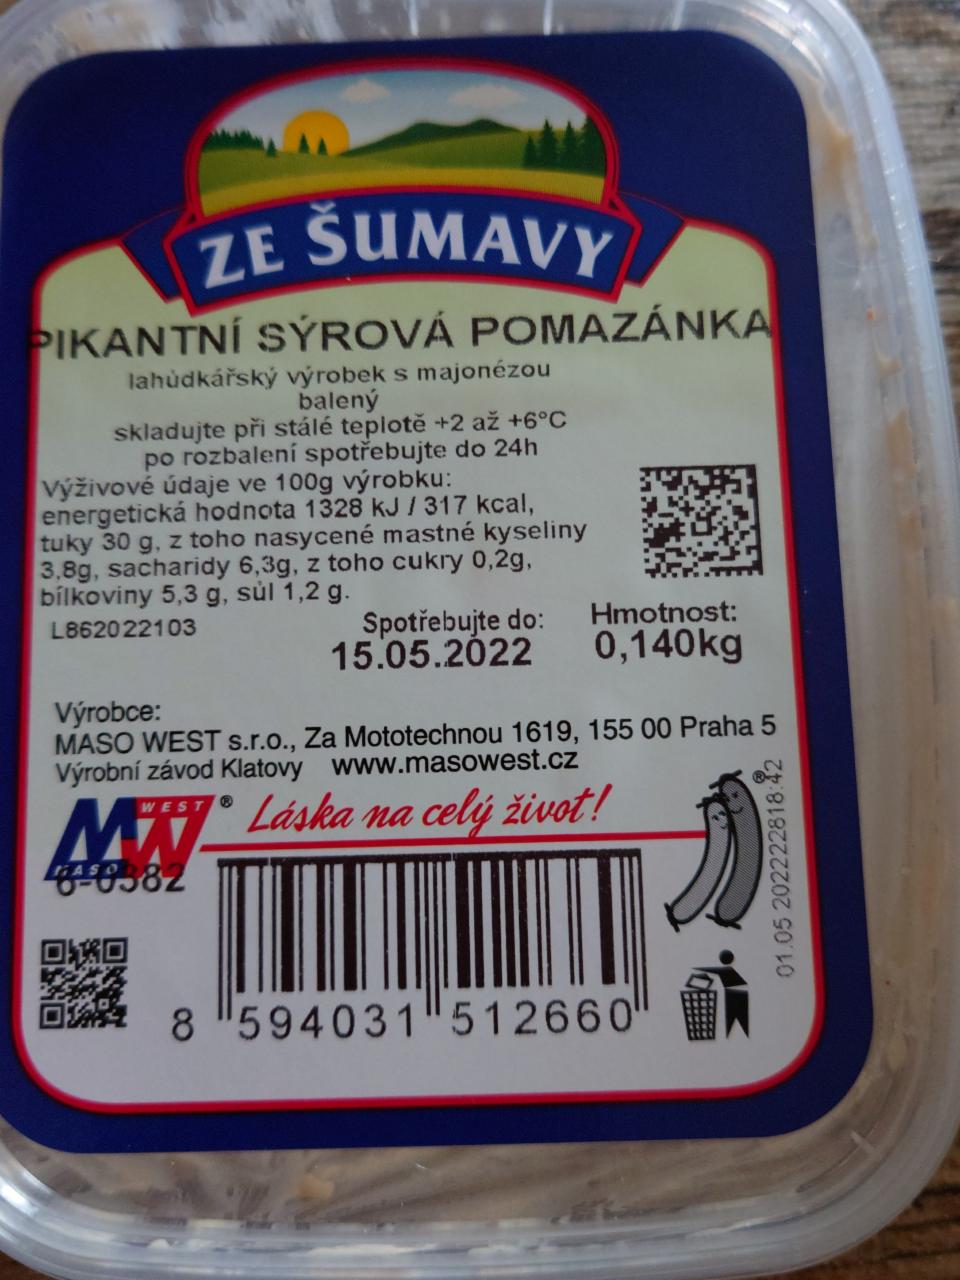 Fotografie - Pikantní sýrová pomazánka Ze Šumavy